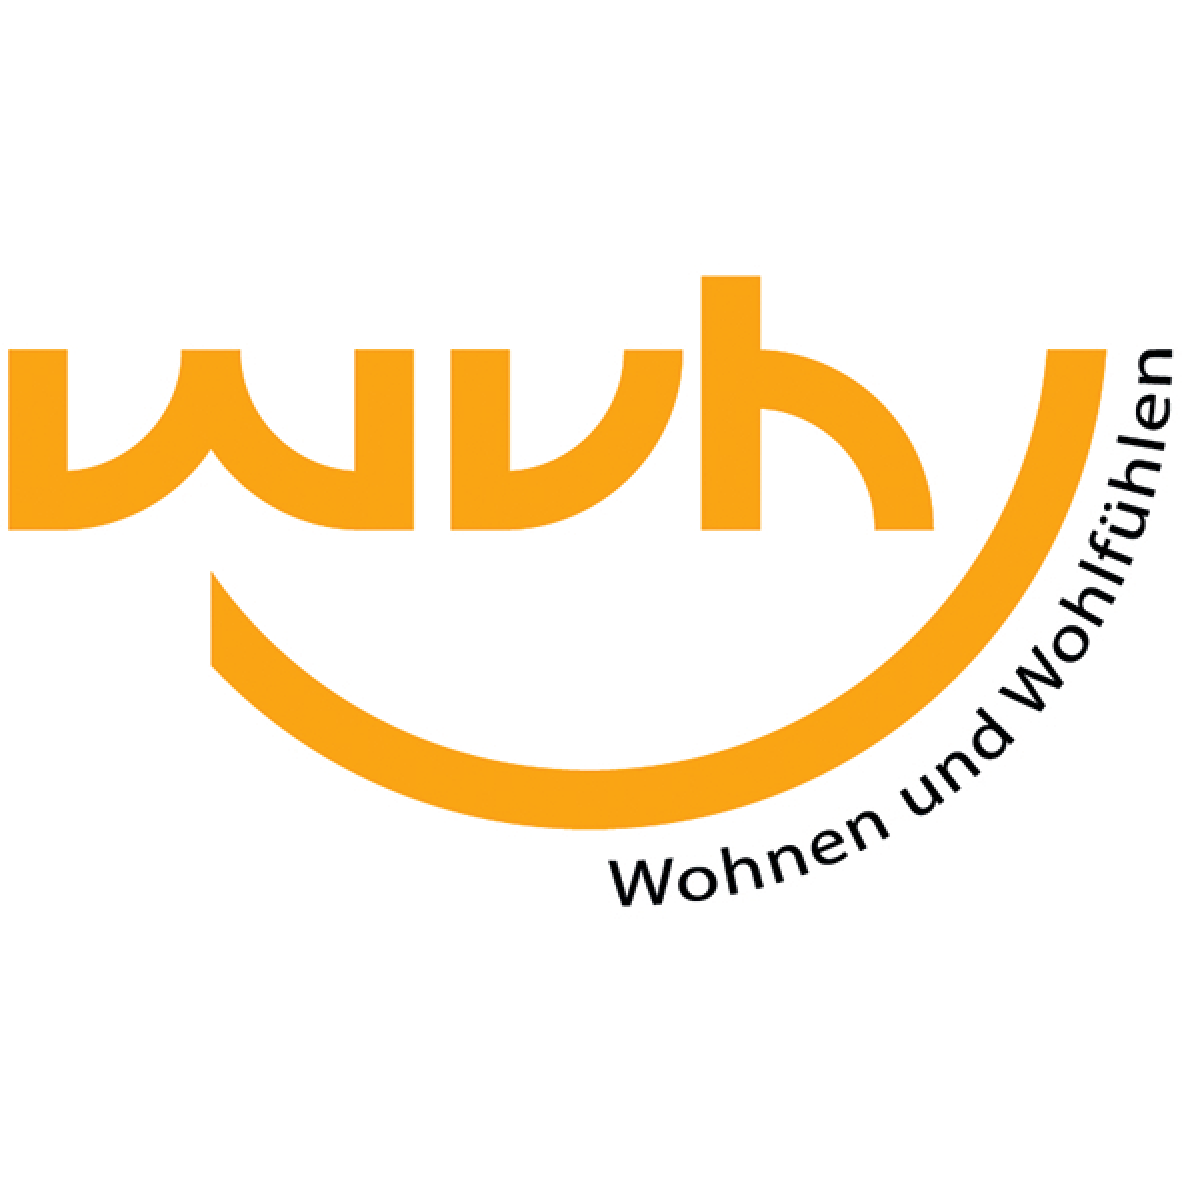 WVH Dienstleistungsgesellschaft Heidenau mbH in Heidenau in Sachsen - Logo